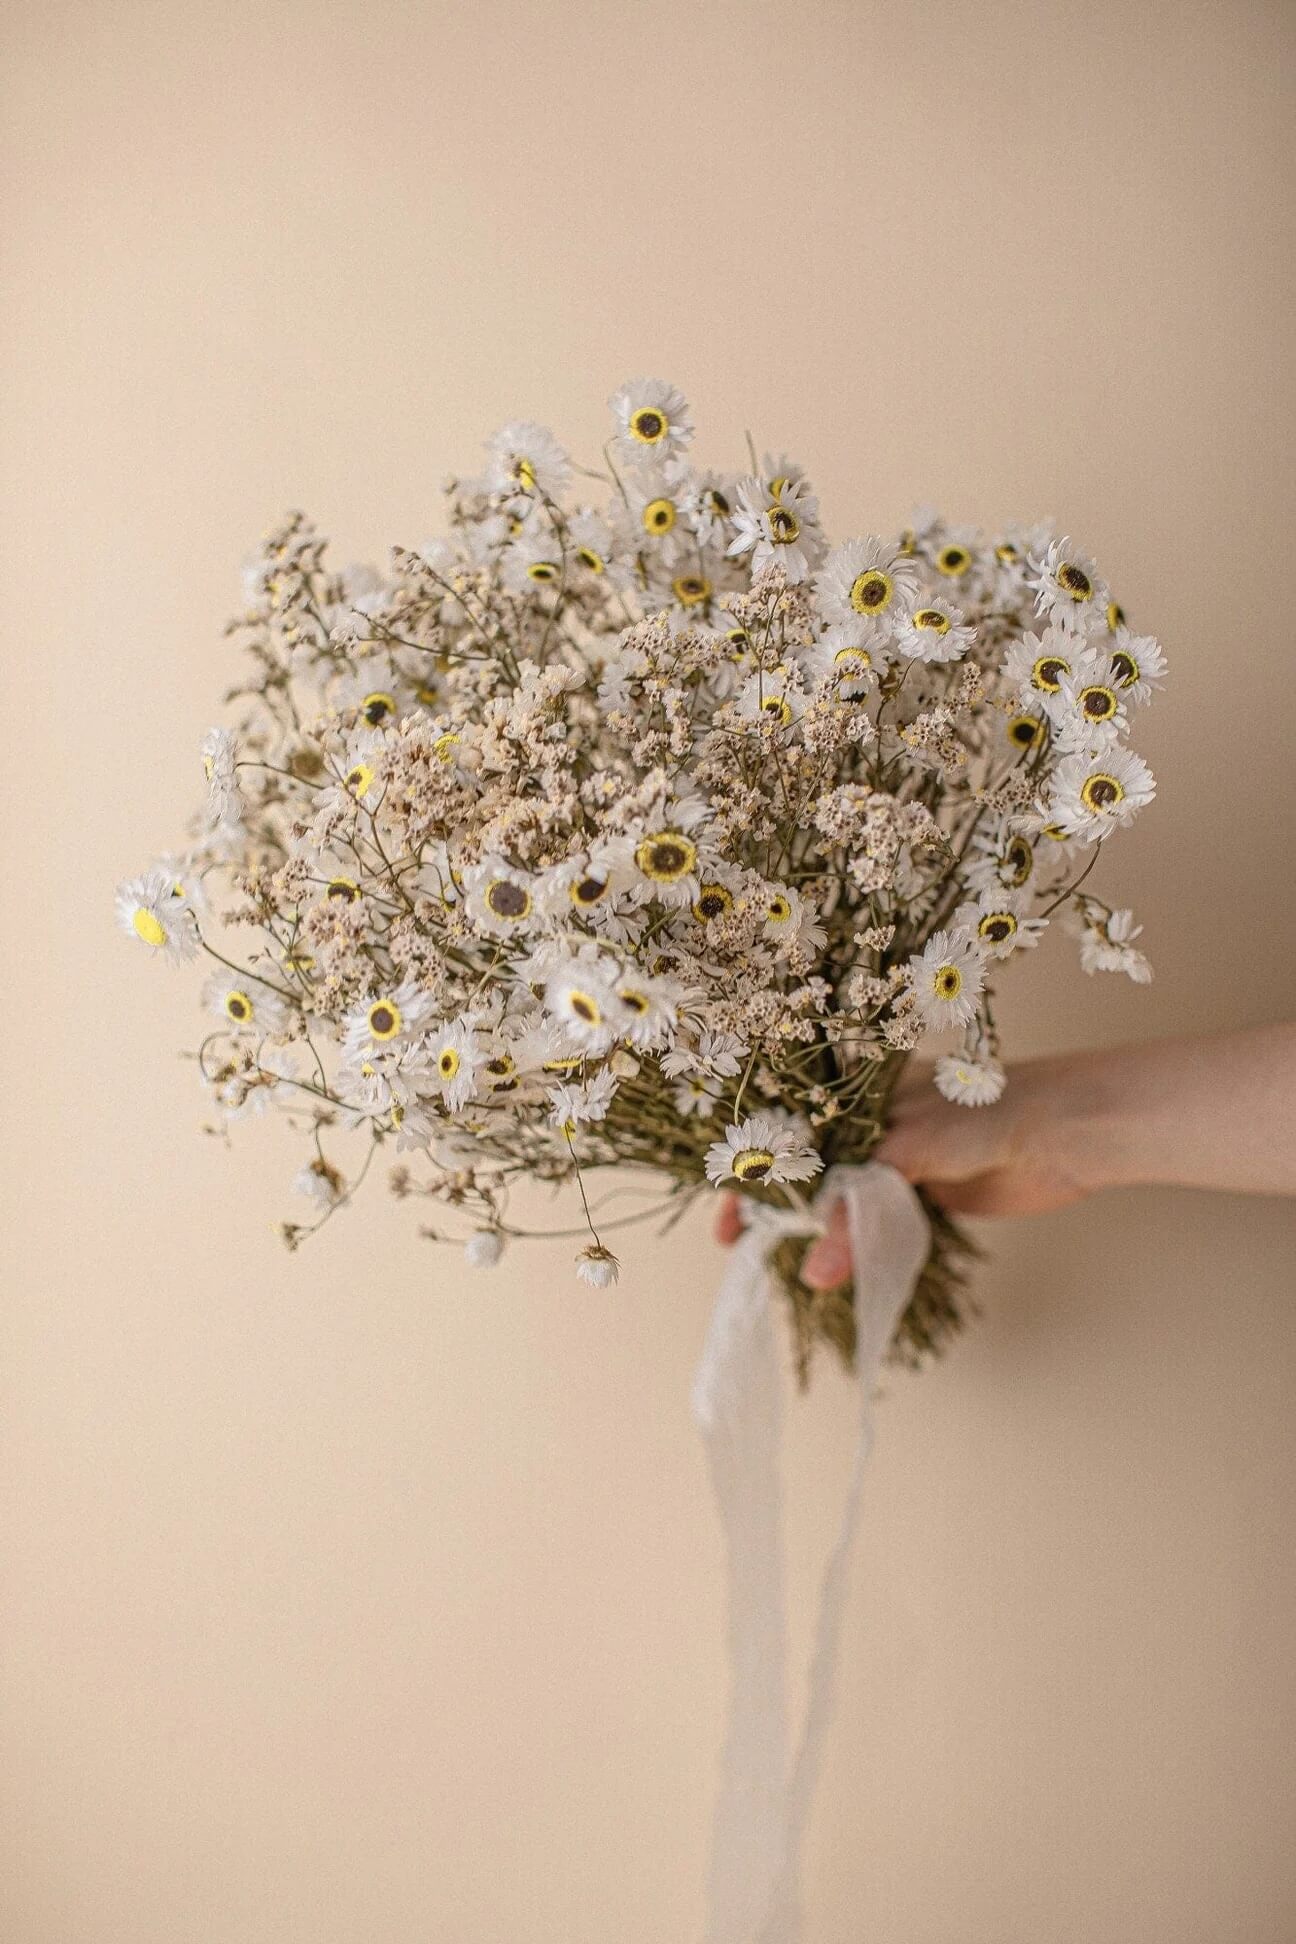 Hidden Botanics’ dried daisy wedding bouquet.